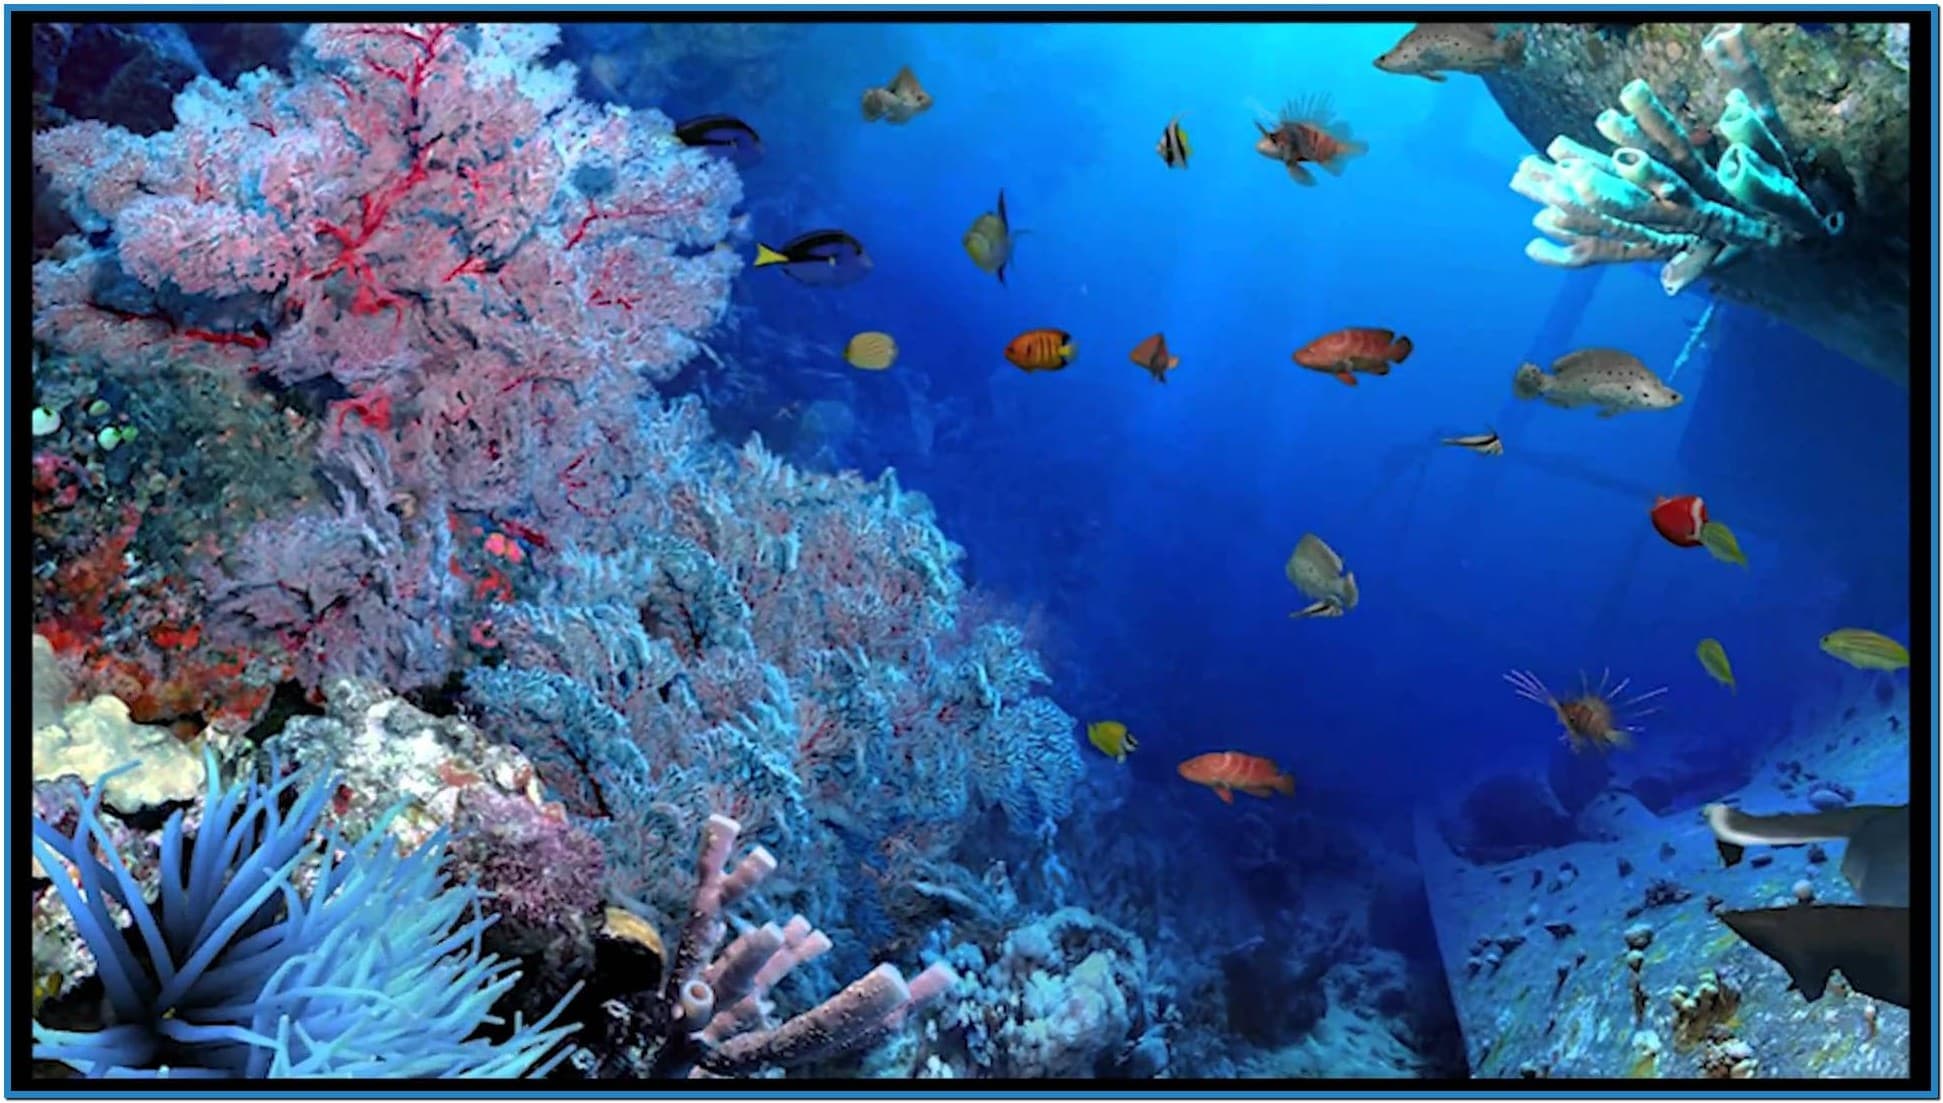 Aquareal 3d sea aquarium screensaver   Download free